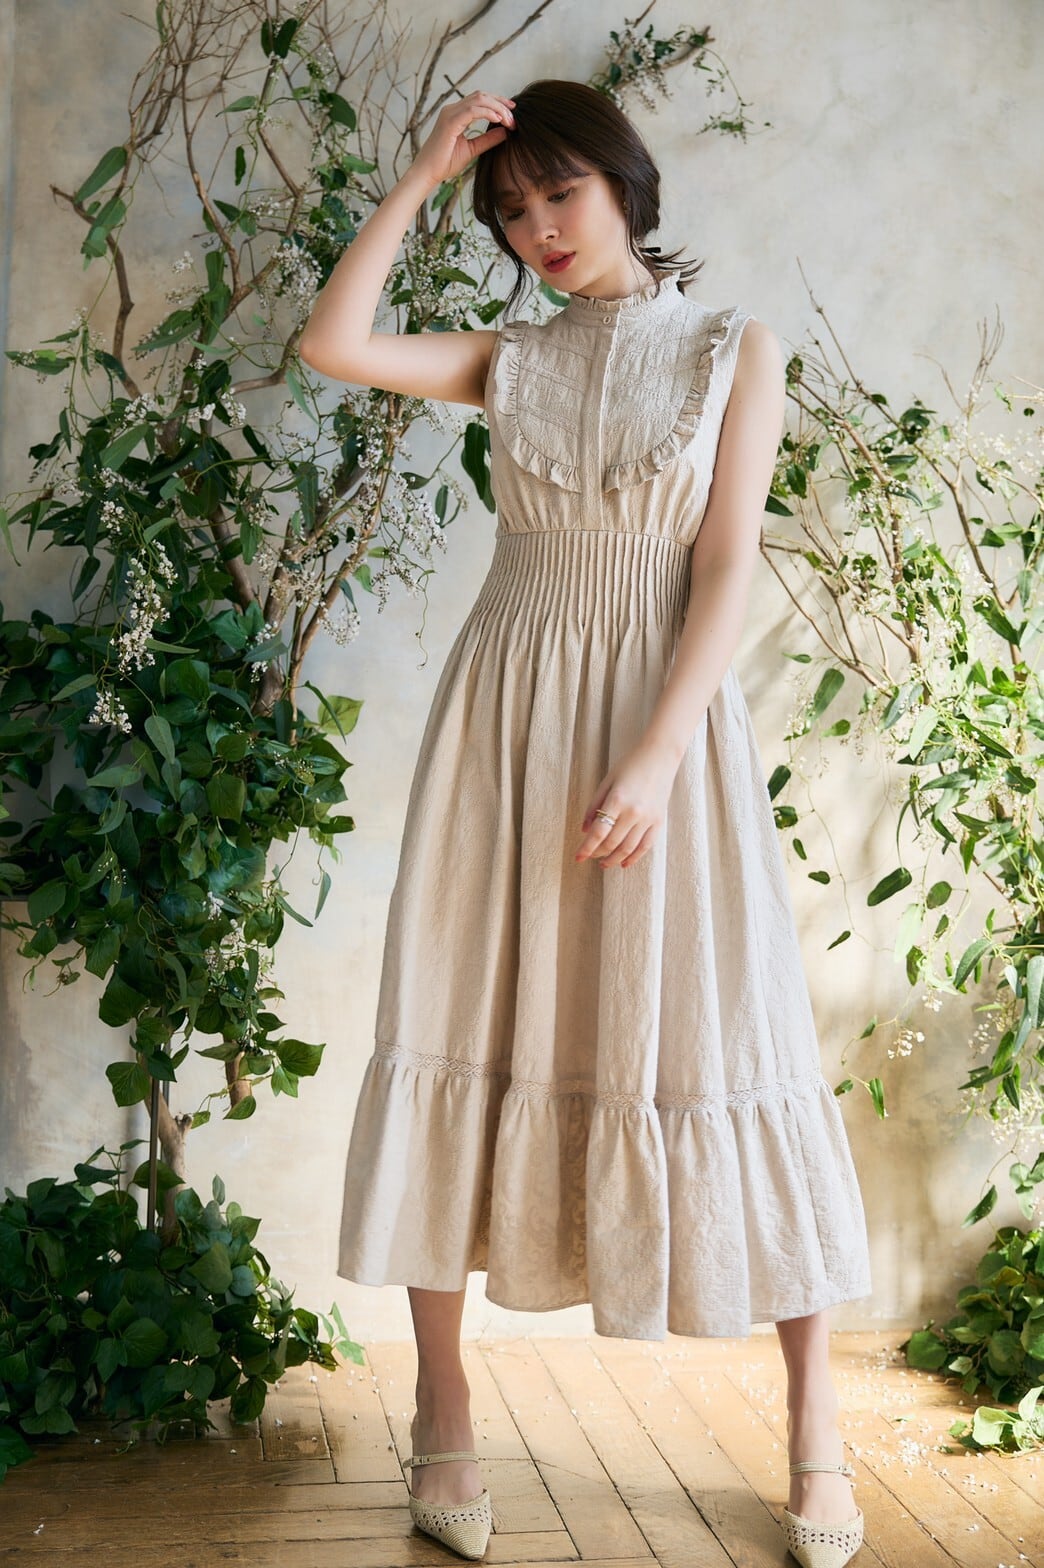 herlipto Paisley Cotton Lace Long Dress - フォーマル